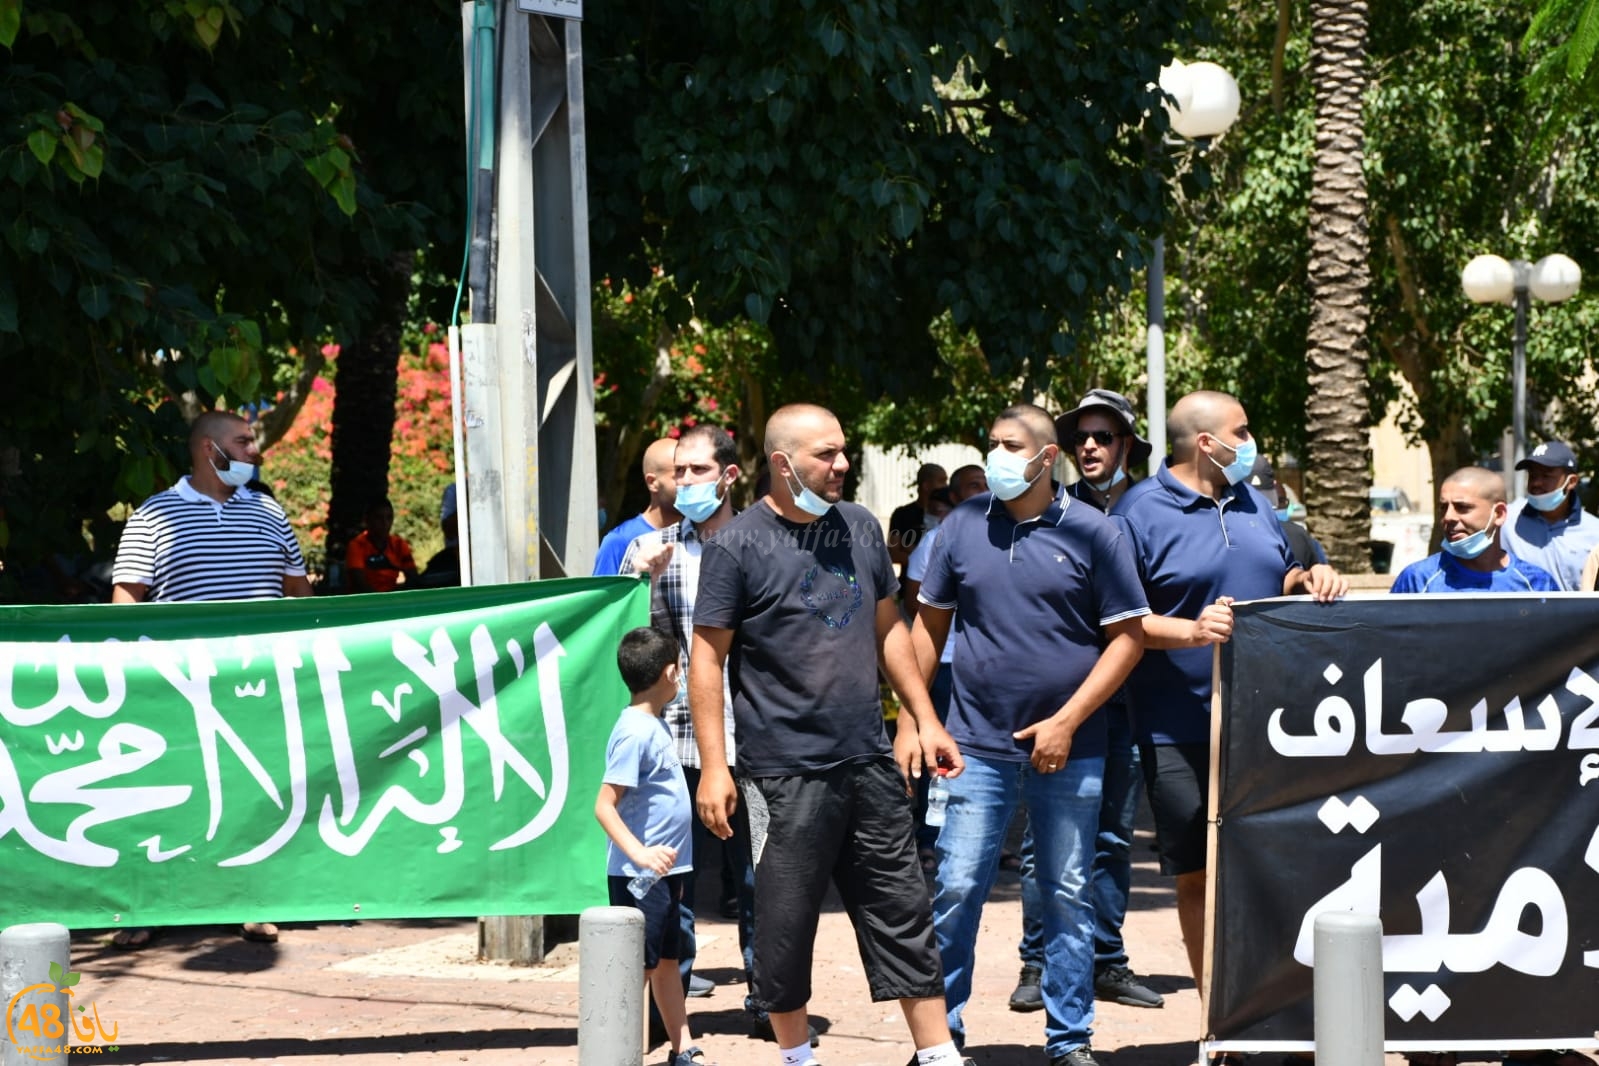  فيديو: وقفة احتجاجية في حديقة الغزازوة رفضاً لنبش مقبرة الاسعاف بيافا